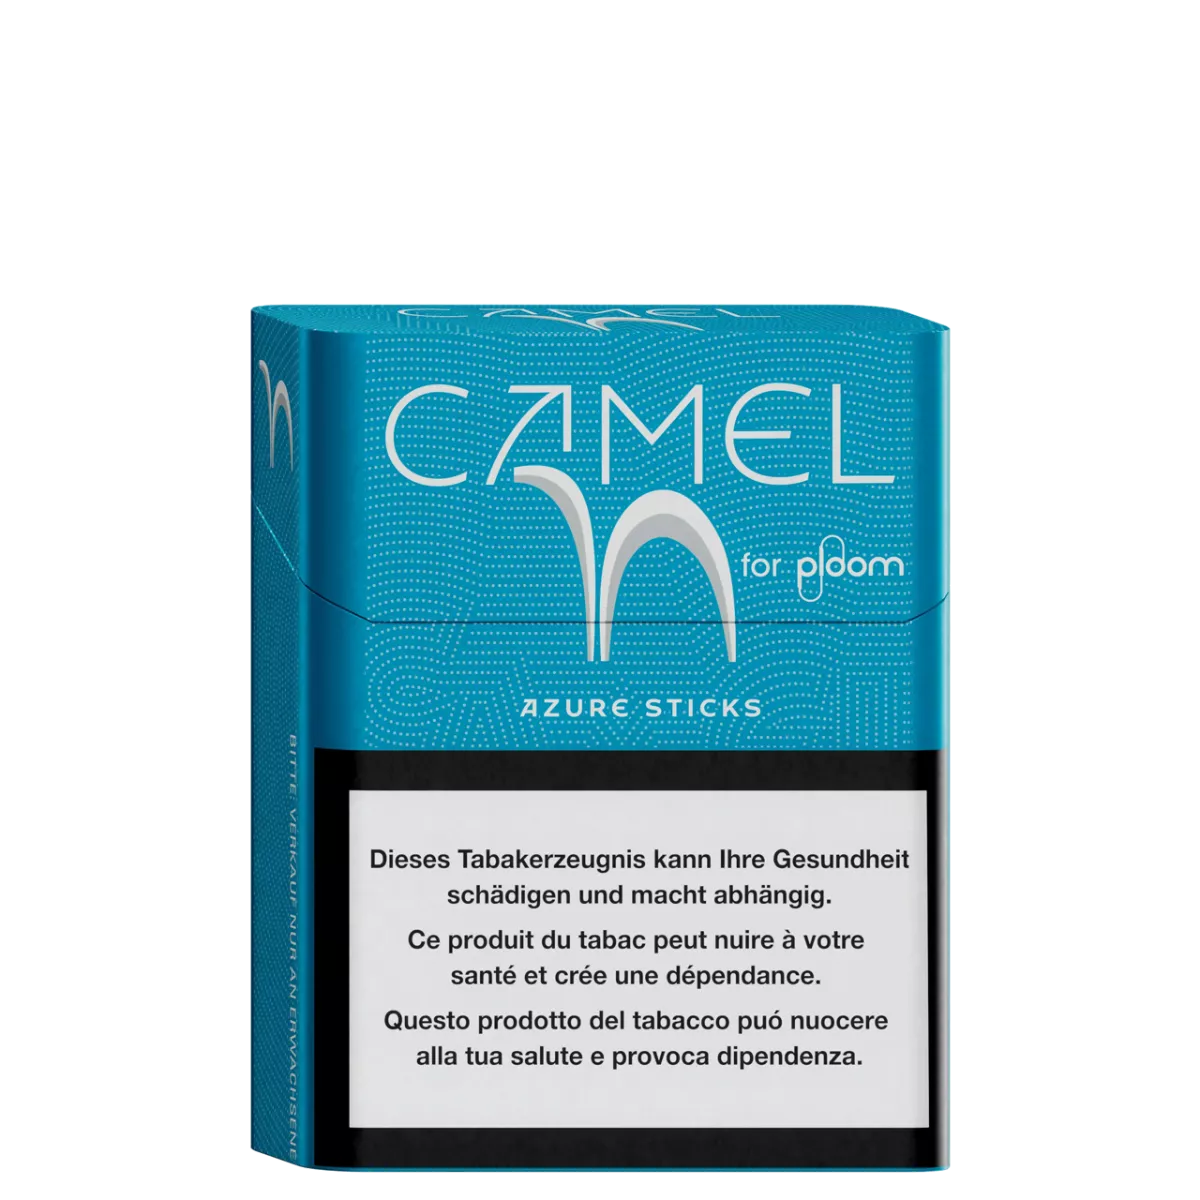 Camel Azure sticks pour ploom X advanced